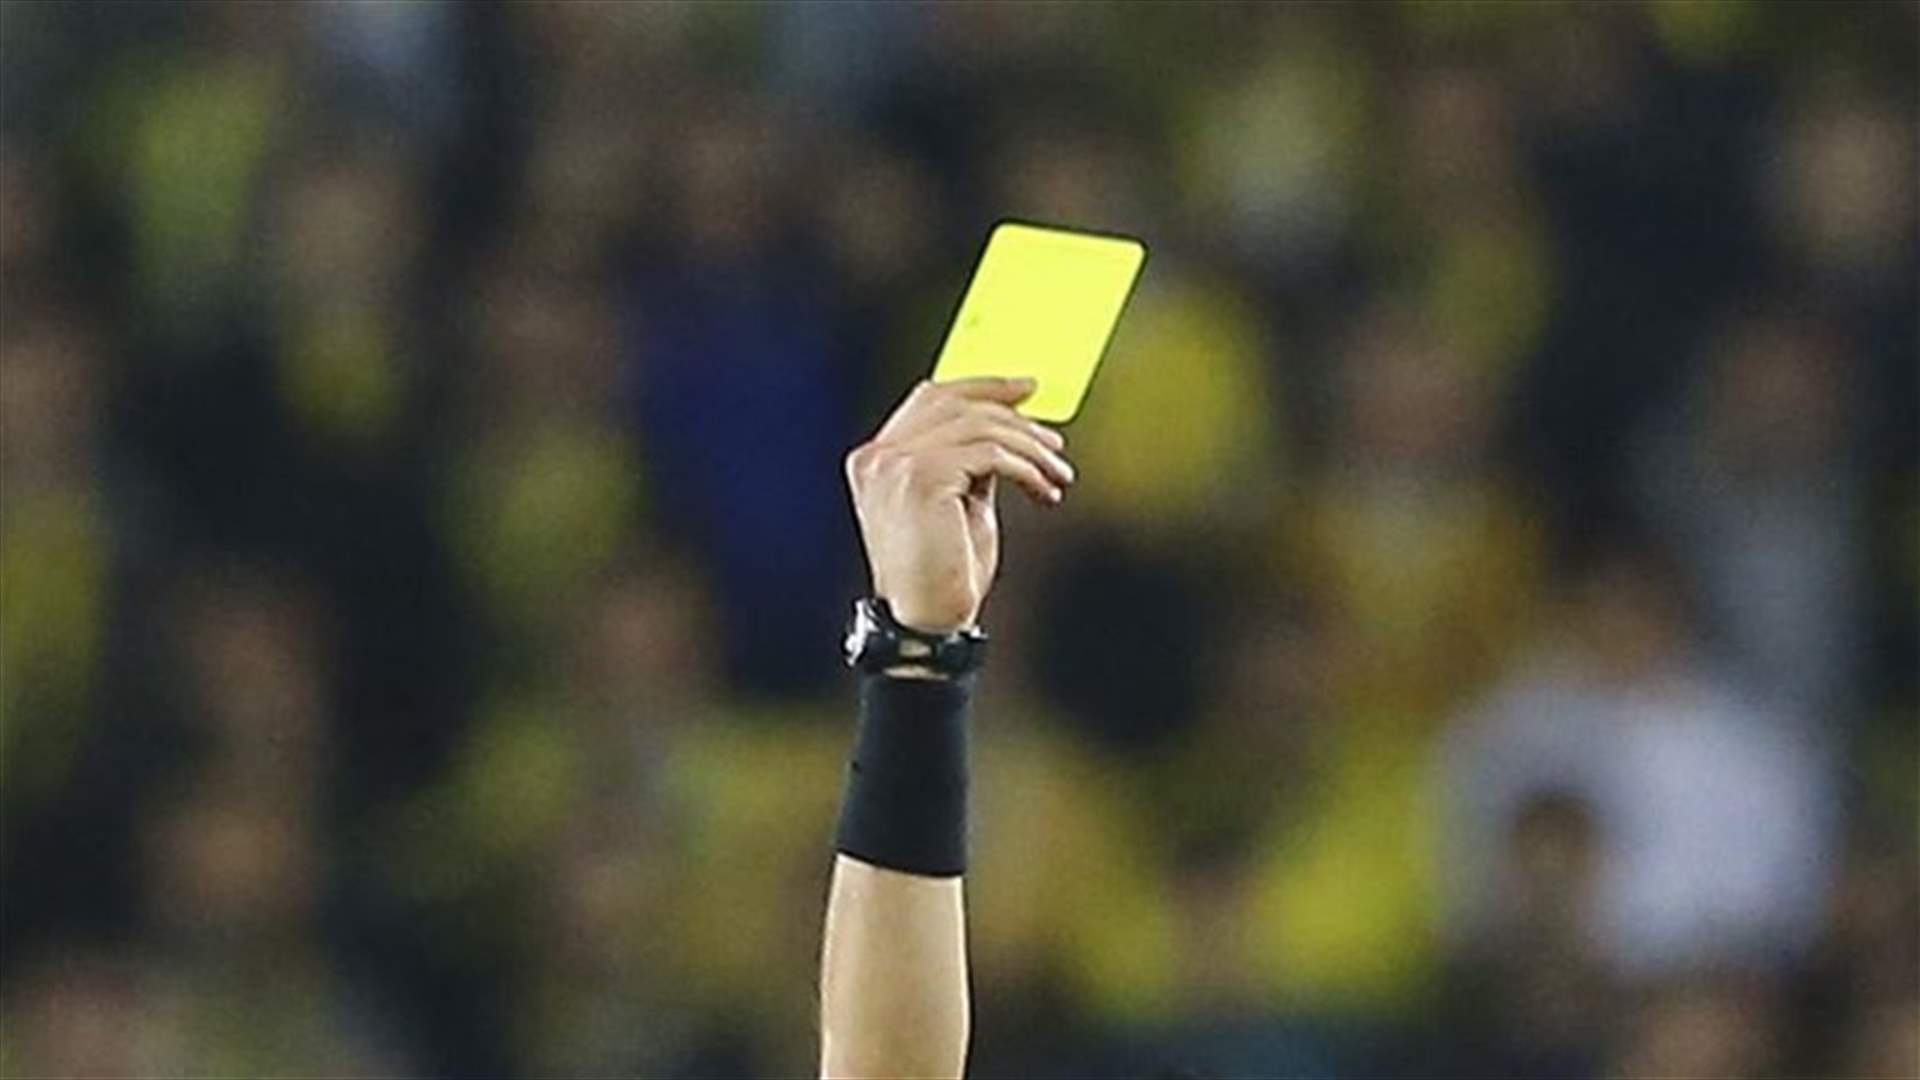 حكم كرة قدم في موقف حرجٍ...نسيَ البطاقة الصّفراء التي أراد رفعها لأحد اللاعبين (فيديو)